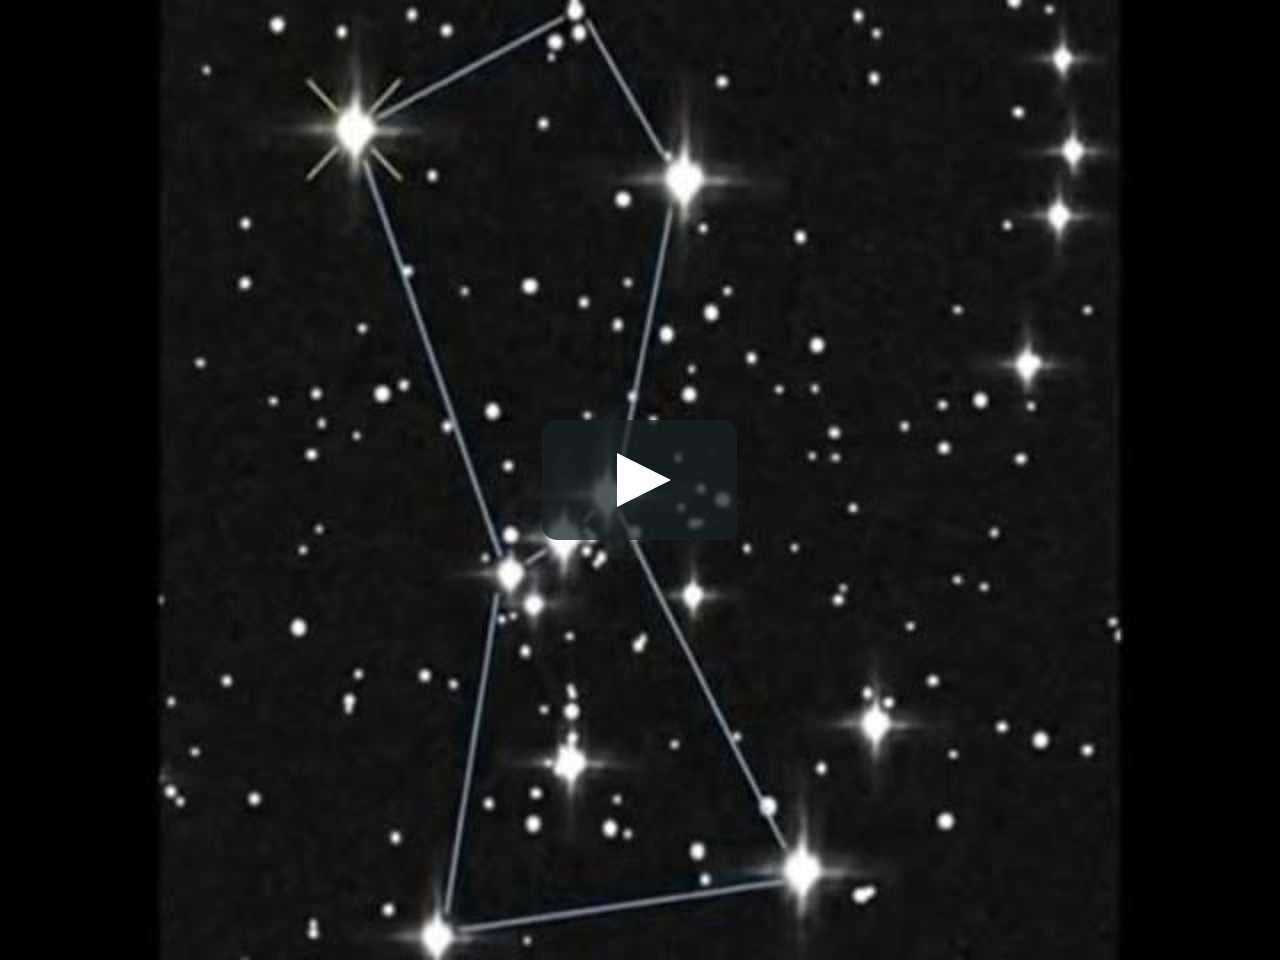 33 созвездия. Пирамиды и Созвездие Ориона. Созвездие Ориона на небе. Меч Ориона в созвездии. Меч Ориона астеризм.